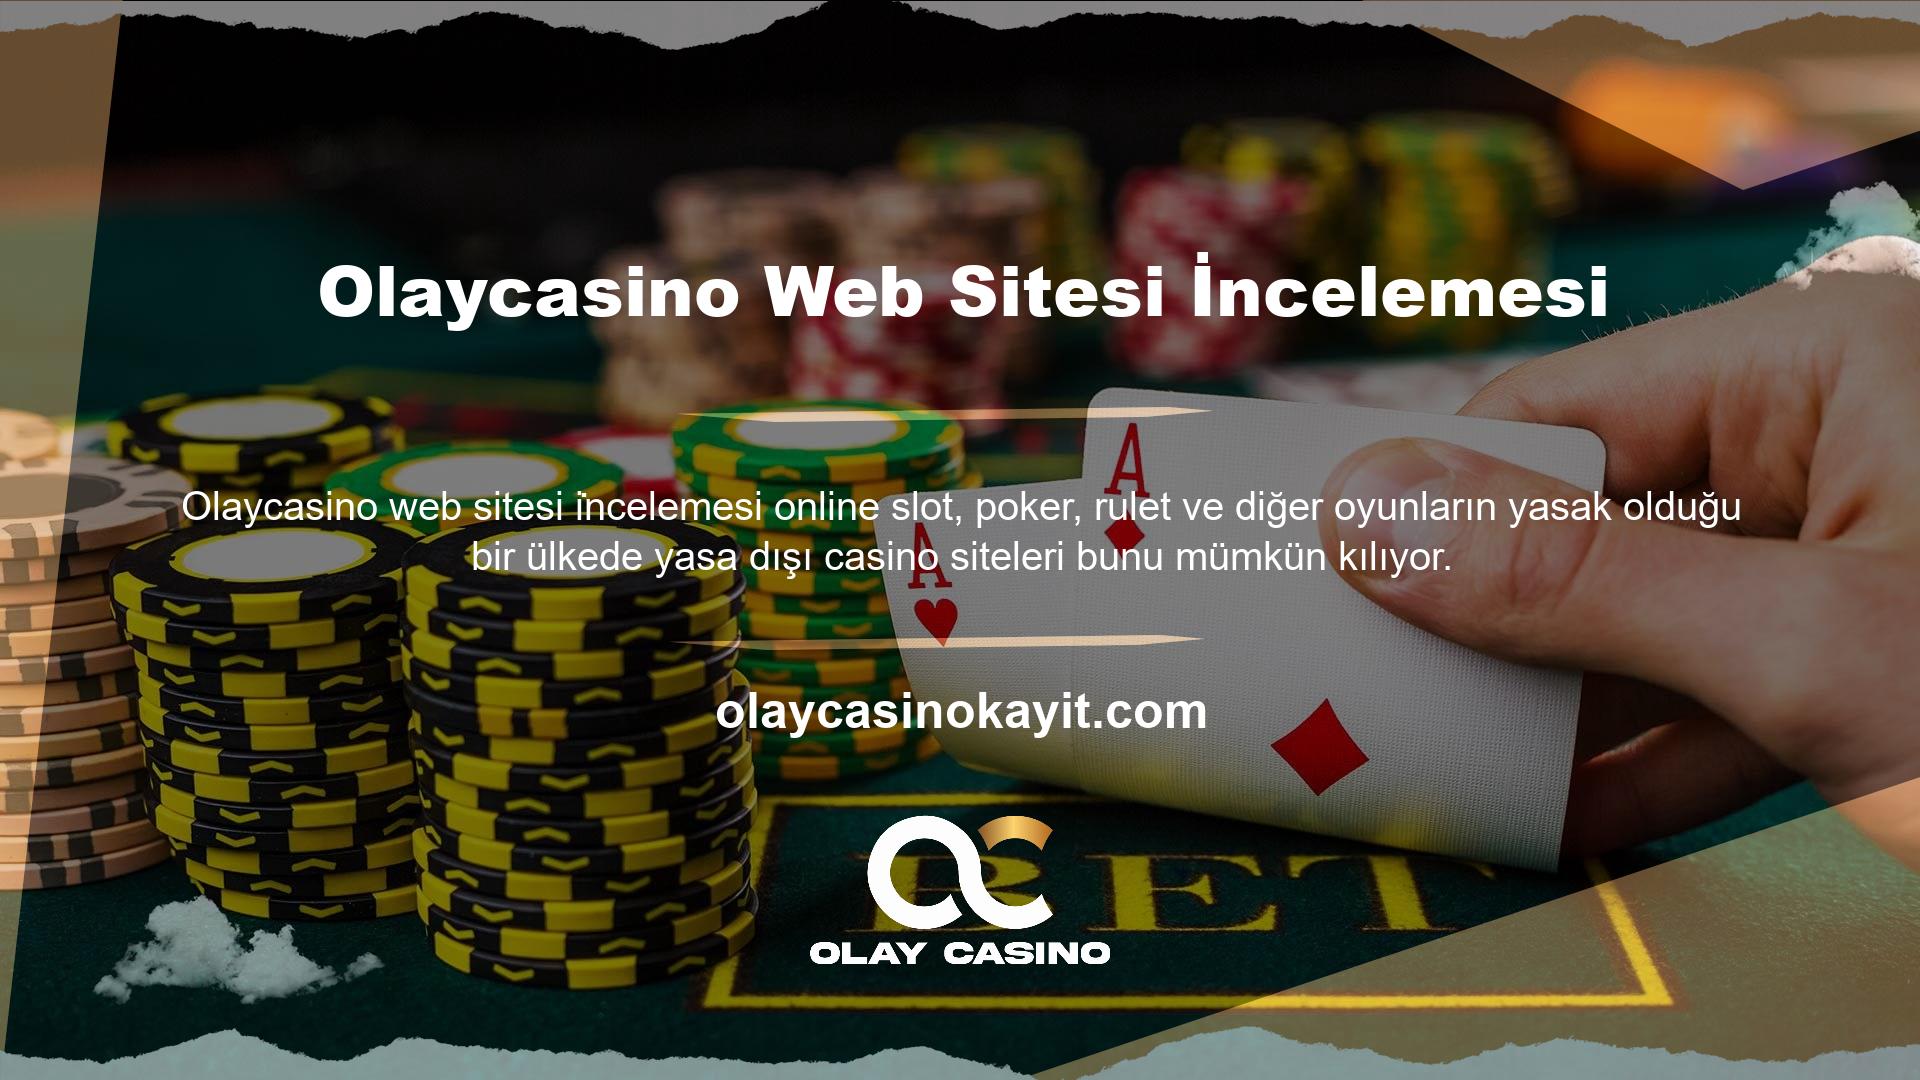 Olaycasino web sitesine baktıktan sonra, bu sayfanın en iyi casino sağlayıcılarını listelediğini gördüm